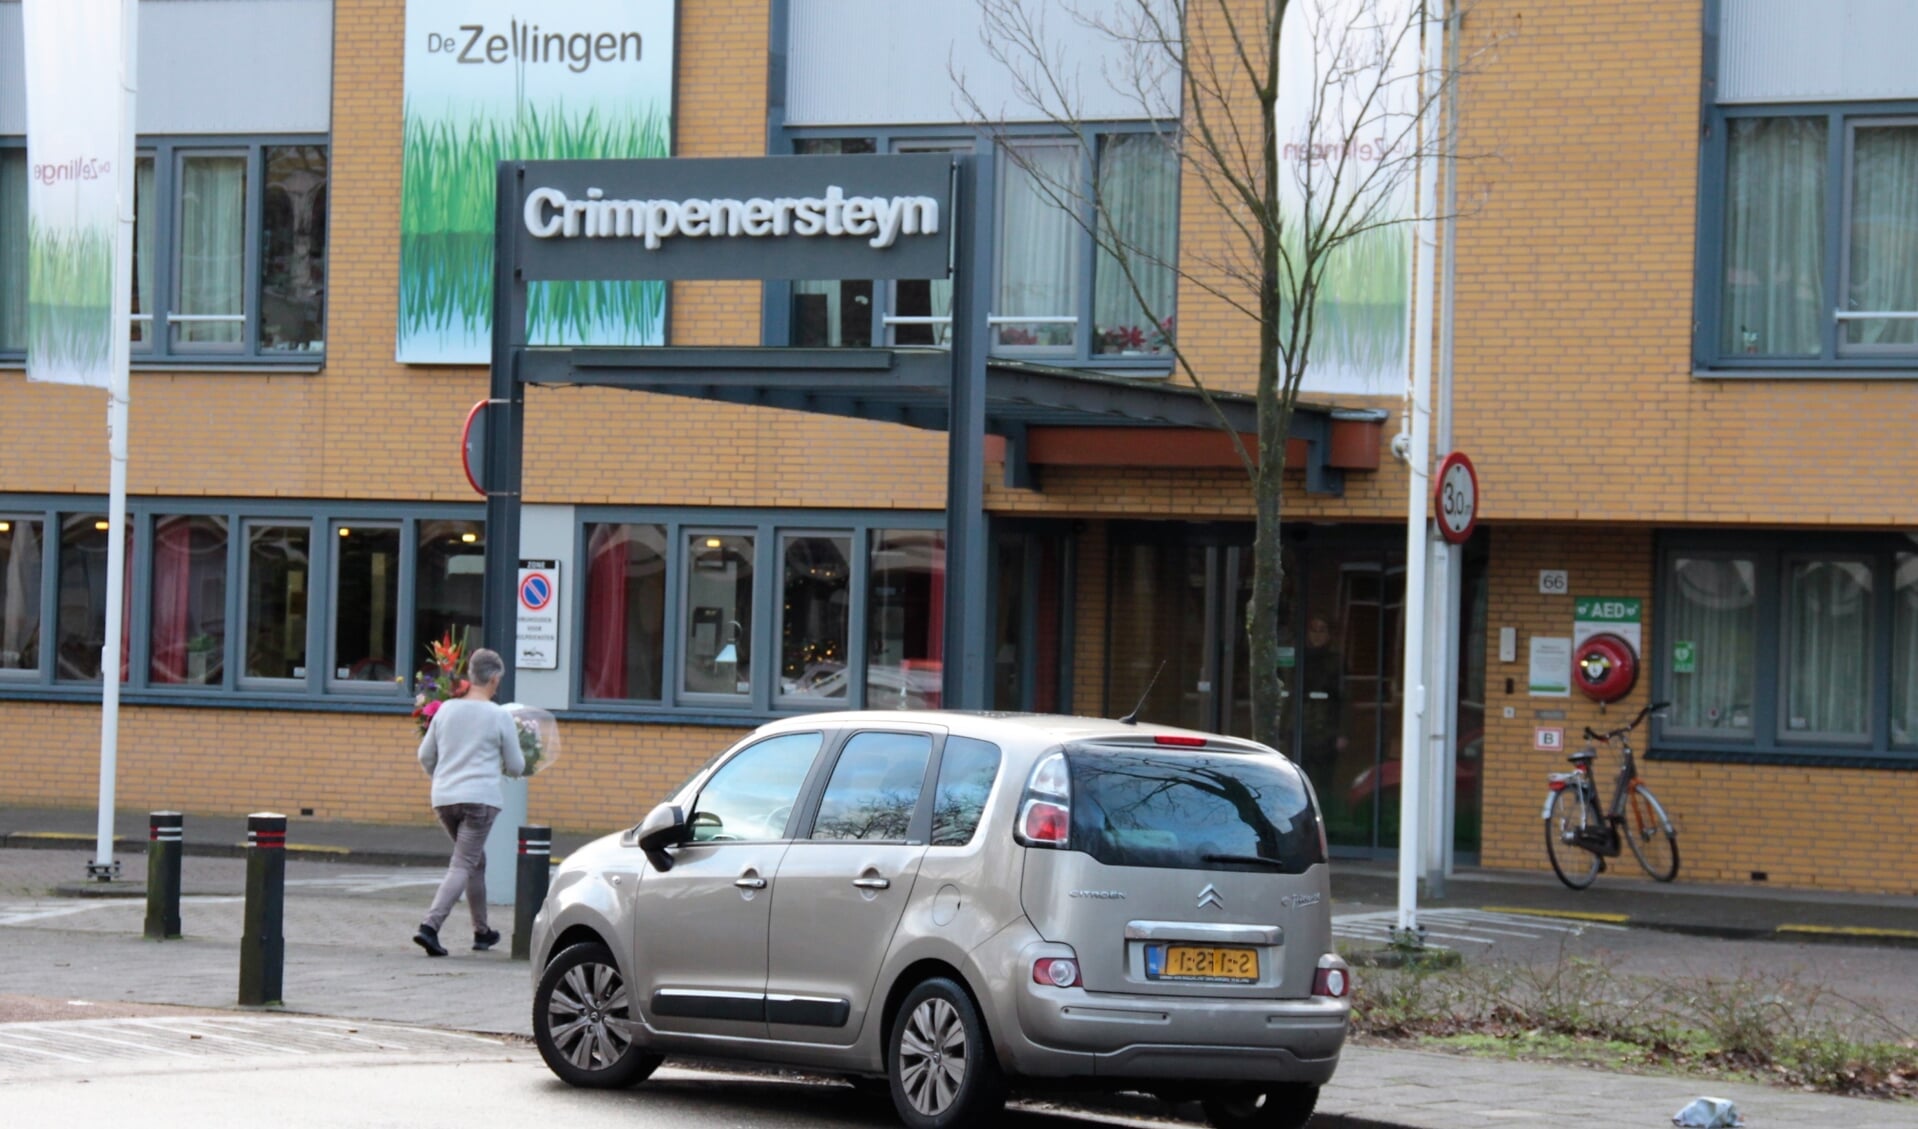 • Entree van zorgcentrum Crimpenersteyn in Krimpen aan den IJssel.